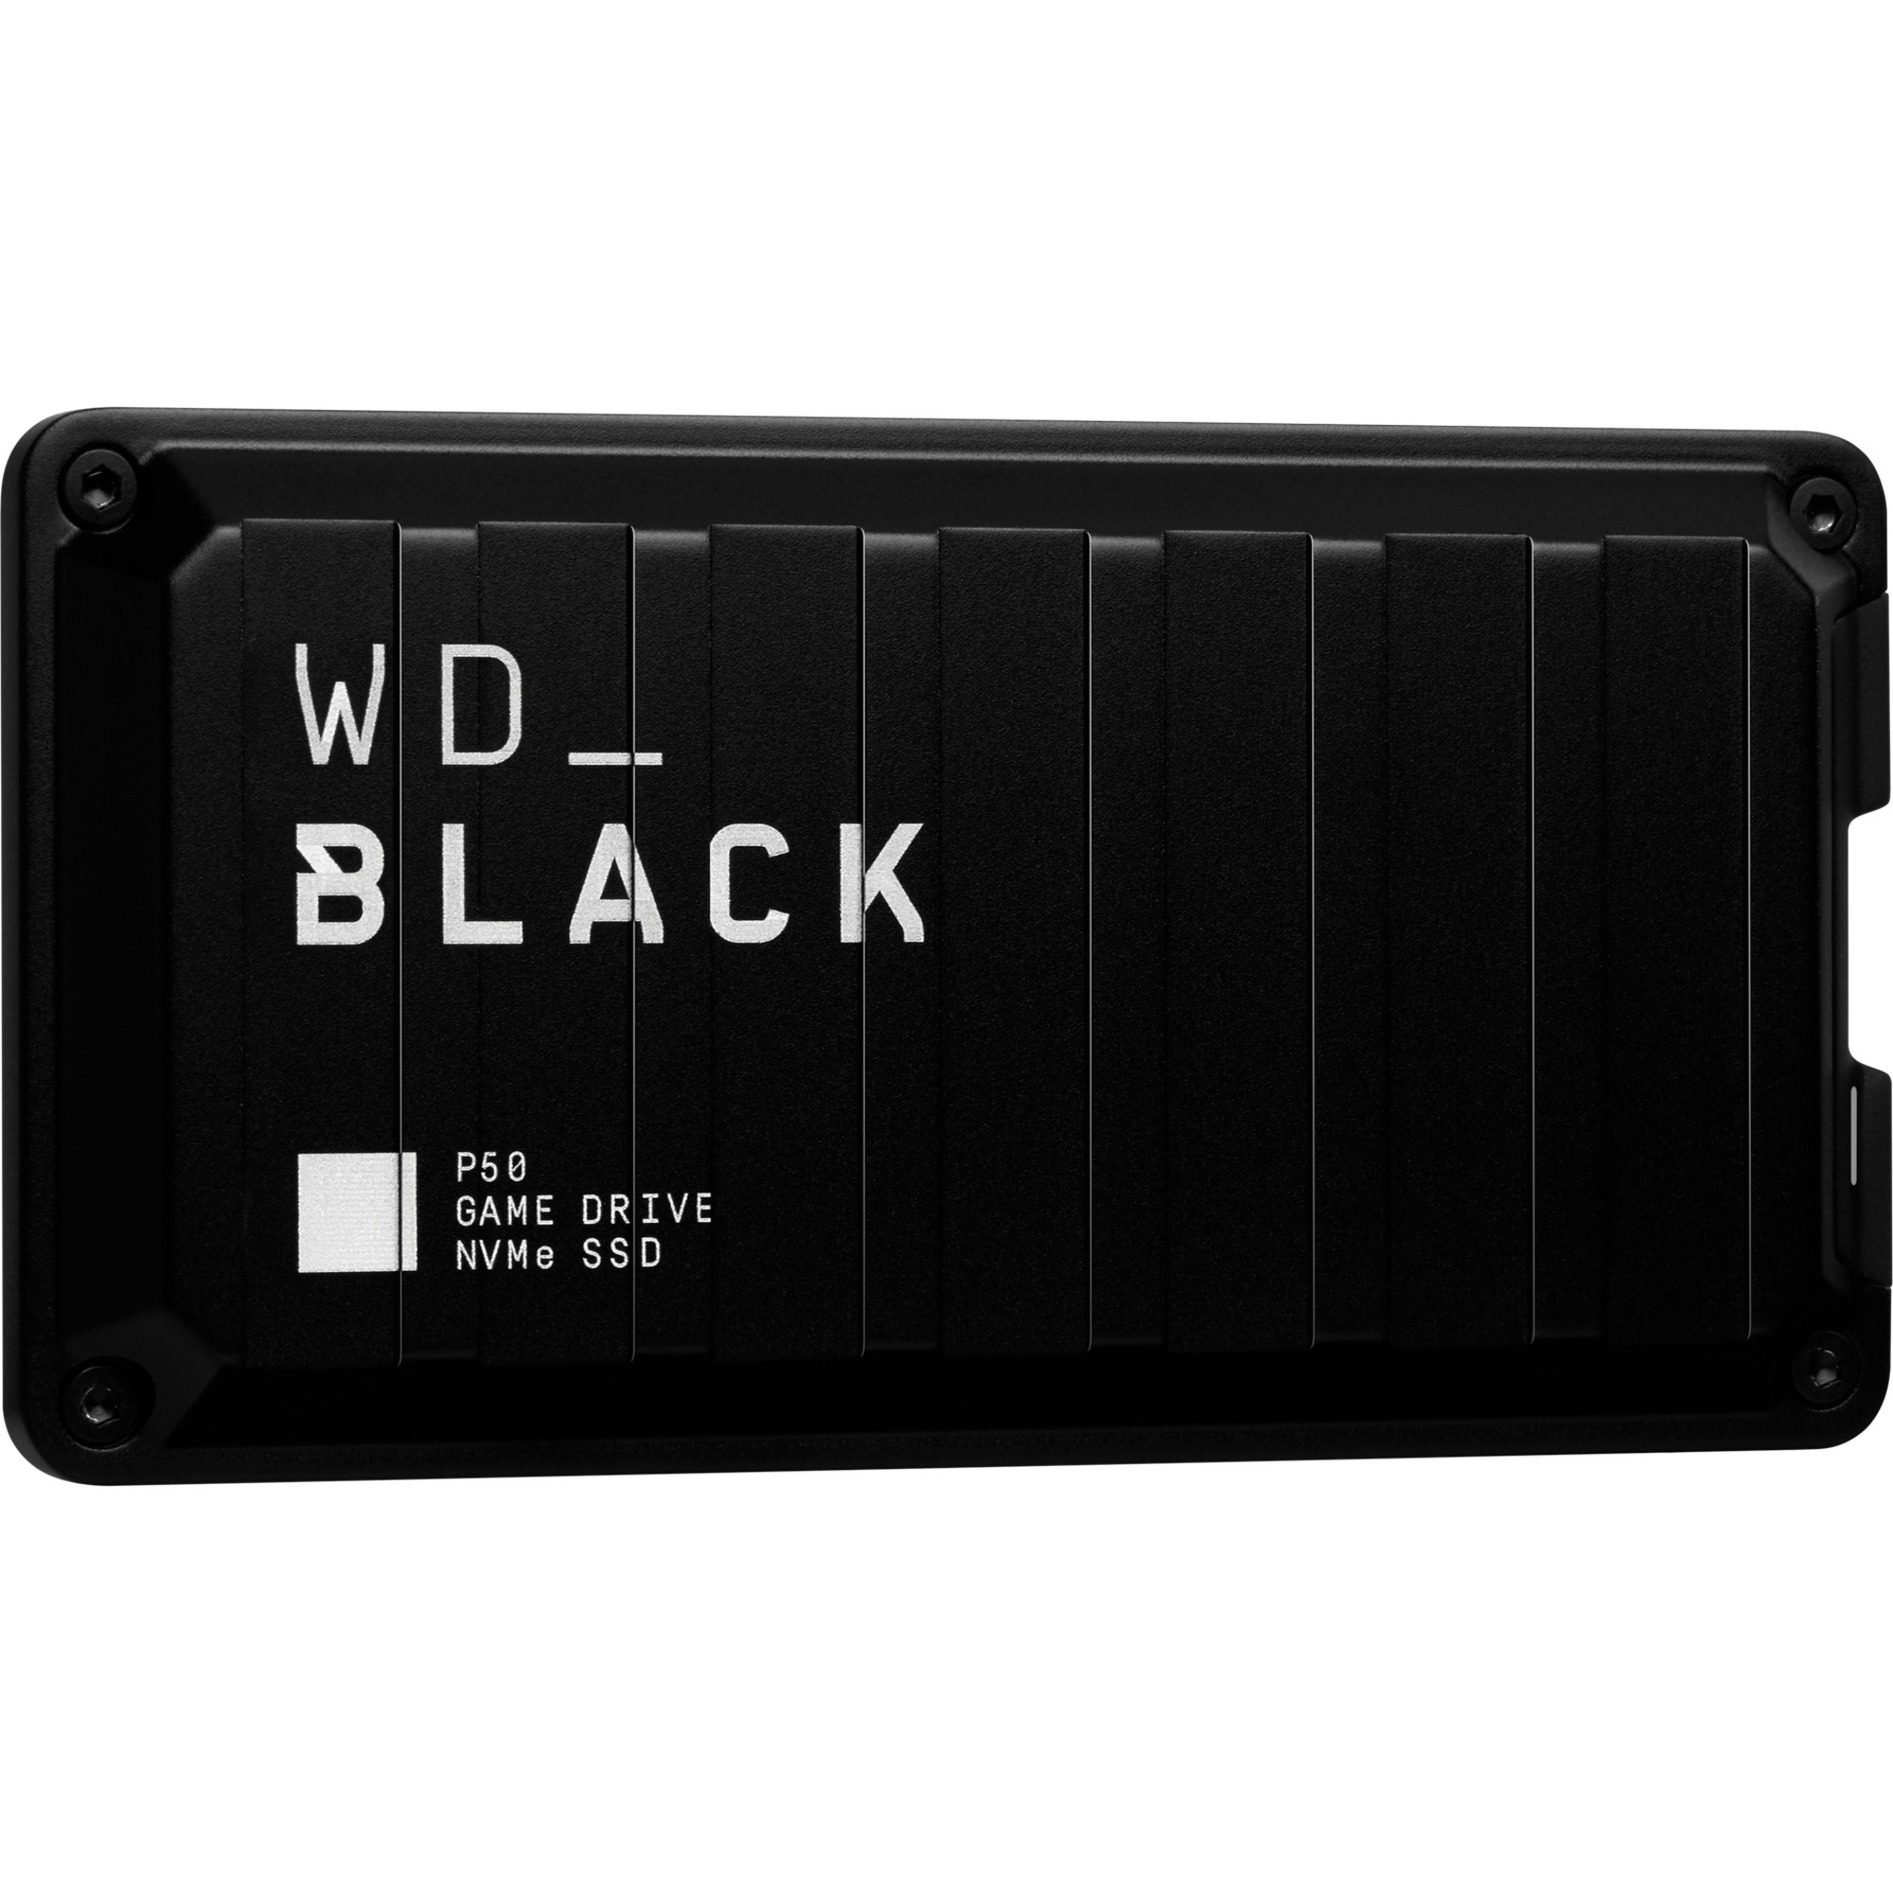 Image of Alternate - Black P50 Game Drive SSD 4 TB, Externe SSD online einkaufen bei Alternate